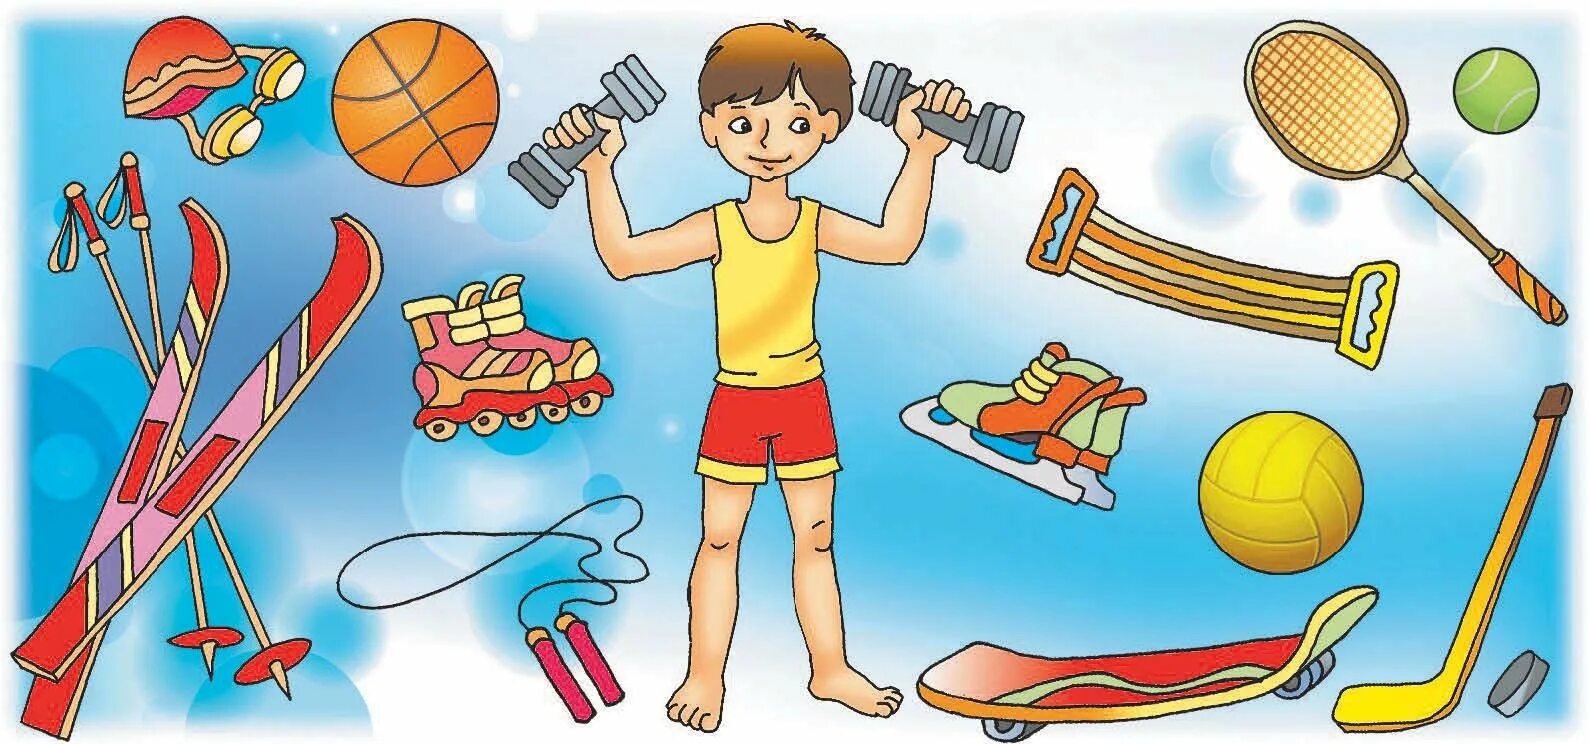 Спорт дает познание. Здоровый образ жизни для детей. Спорт и здоровье для детей. Спортивные рисунки. Здоровый образ жизни картинки для детей.